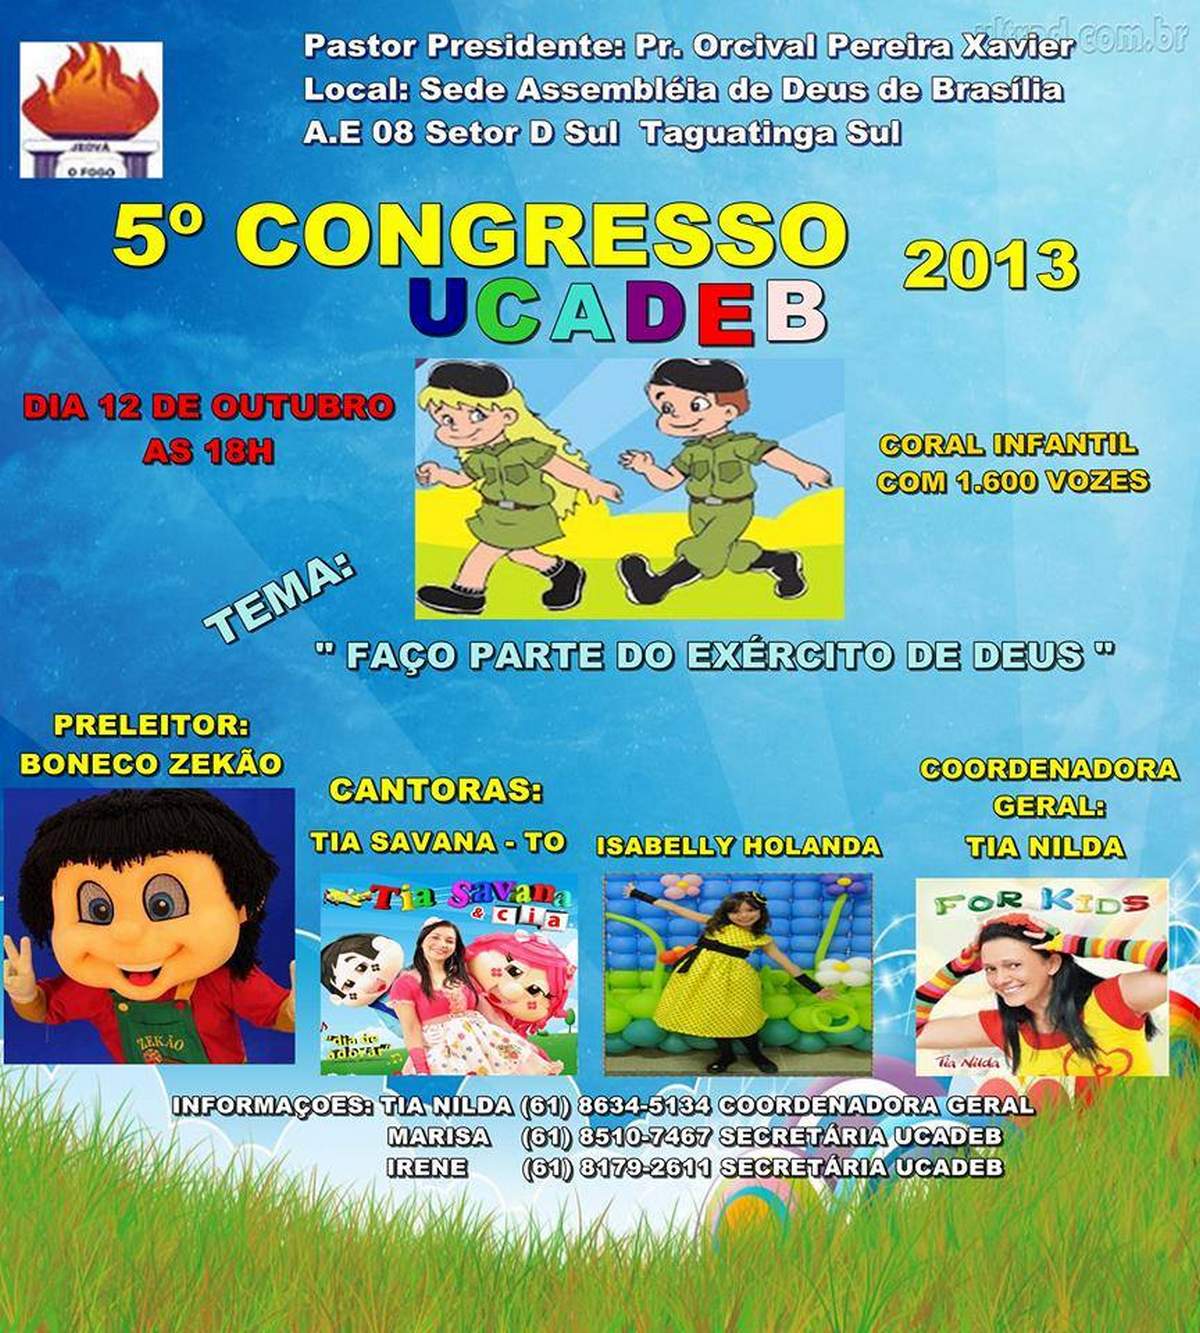 Congresso UCADEB 2013